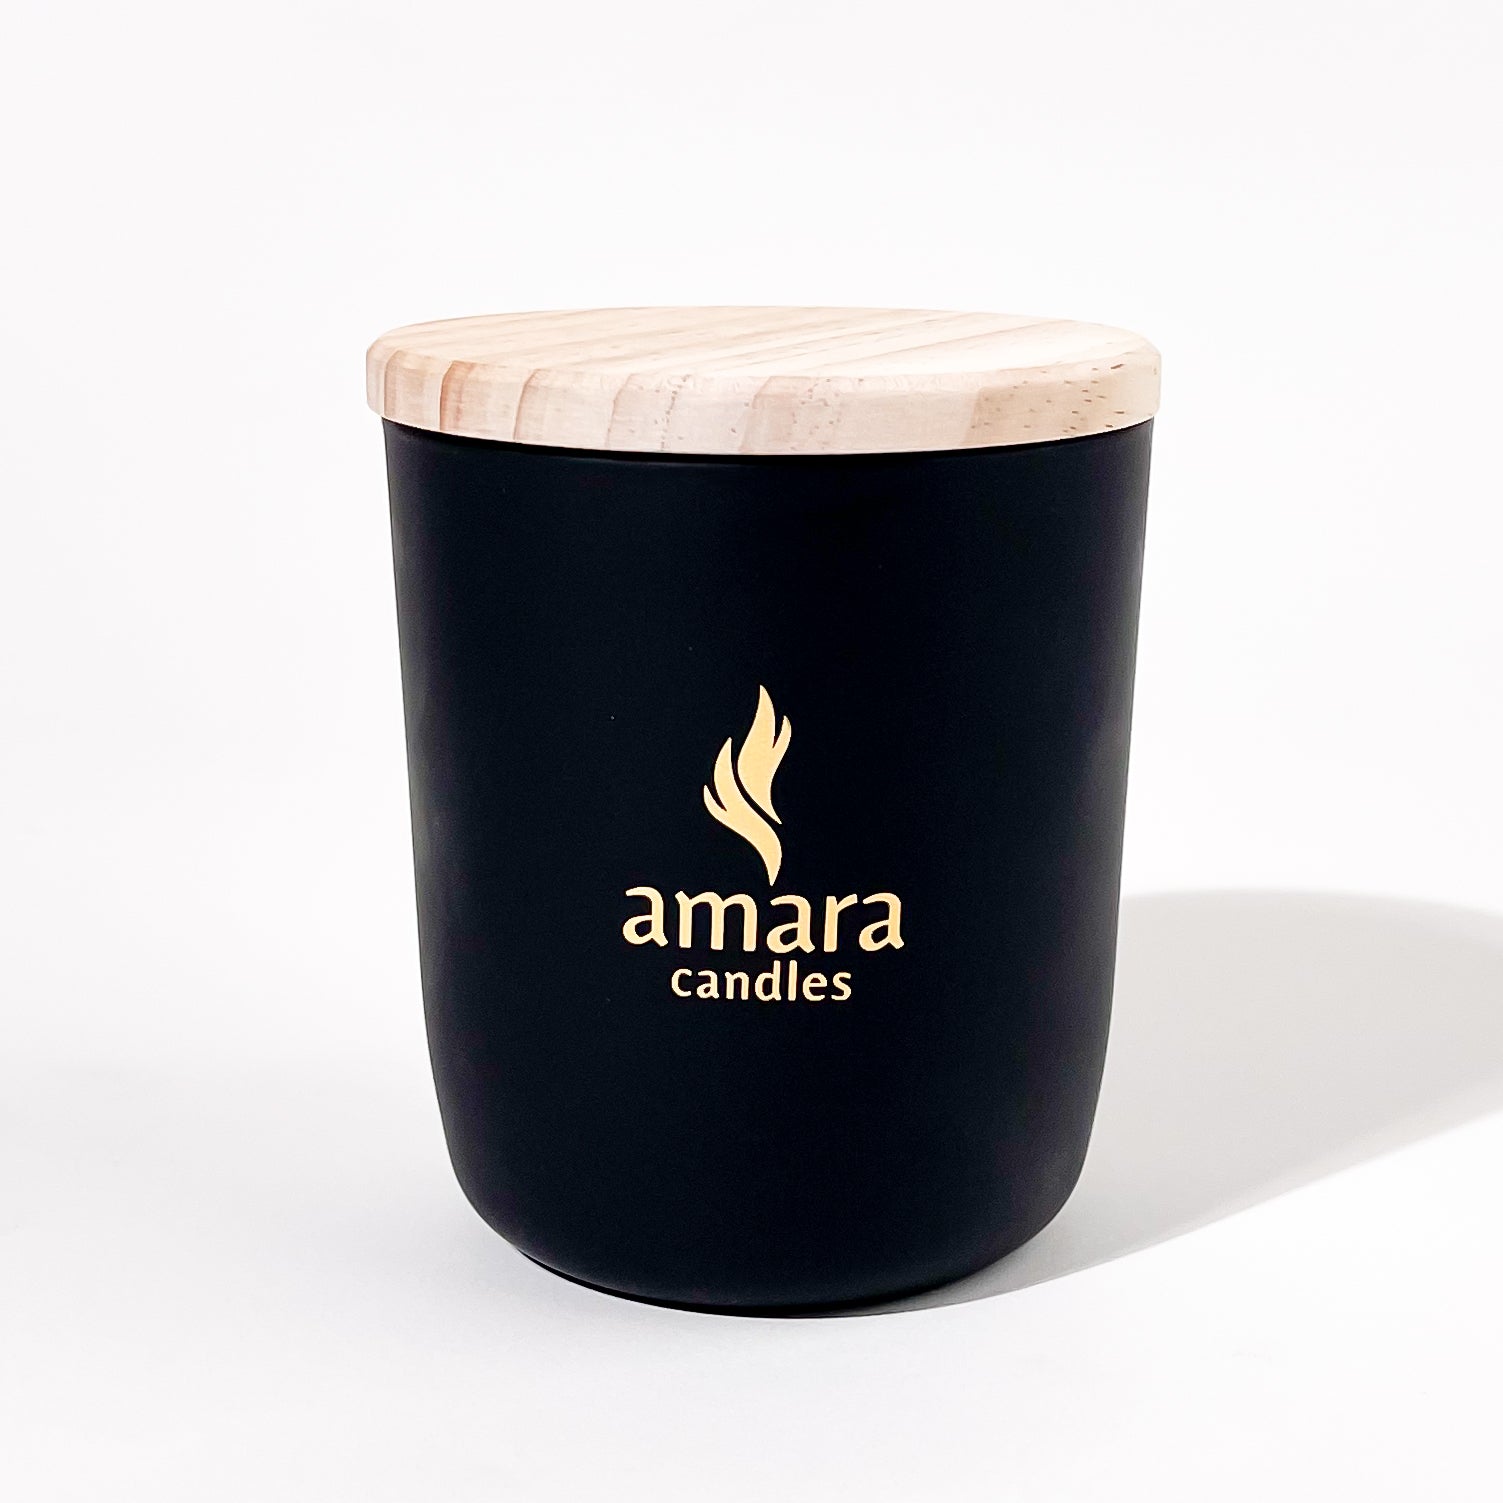 Amara No.1 Vanilla Oud with Amethyst